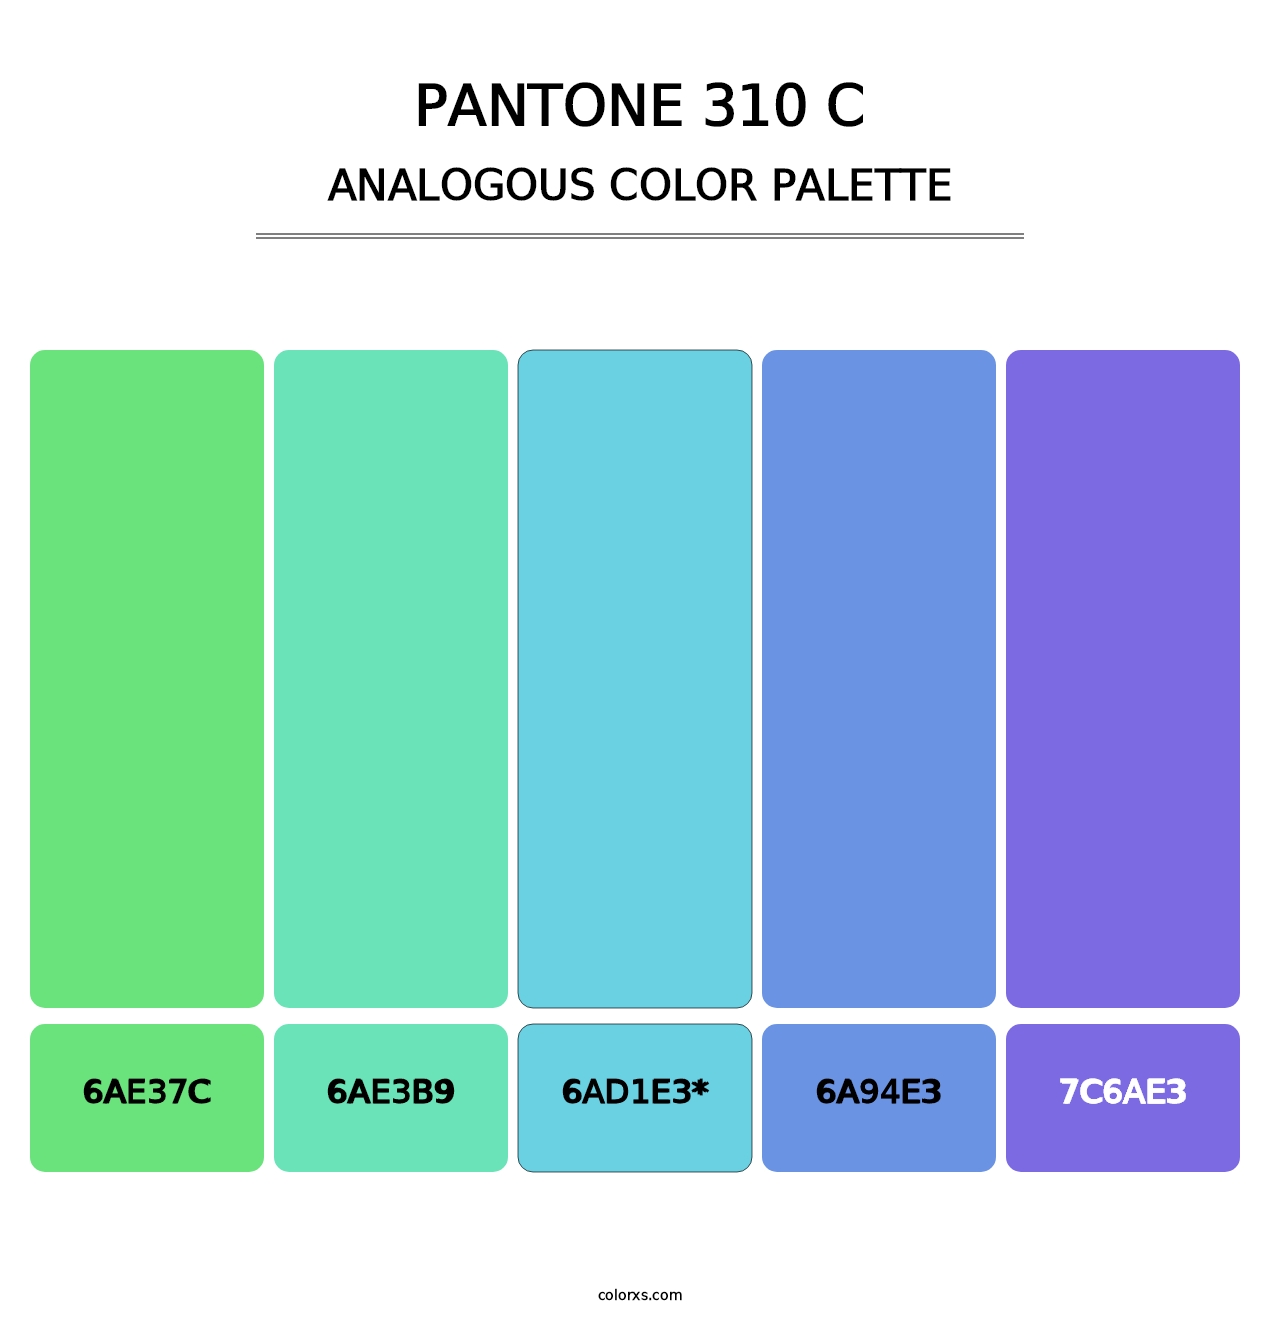 PANTONE 310 C - Analogous Color Palette